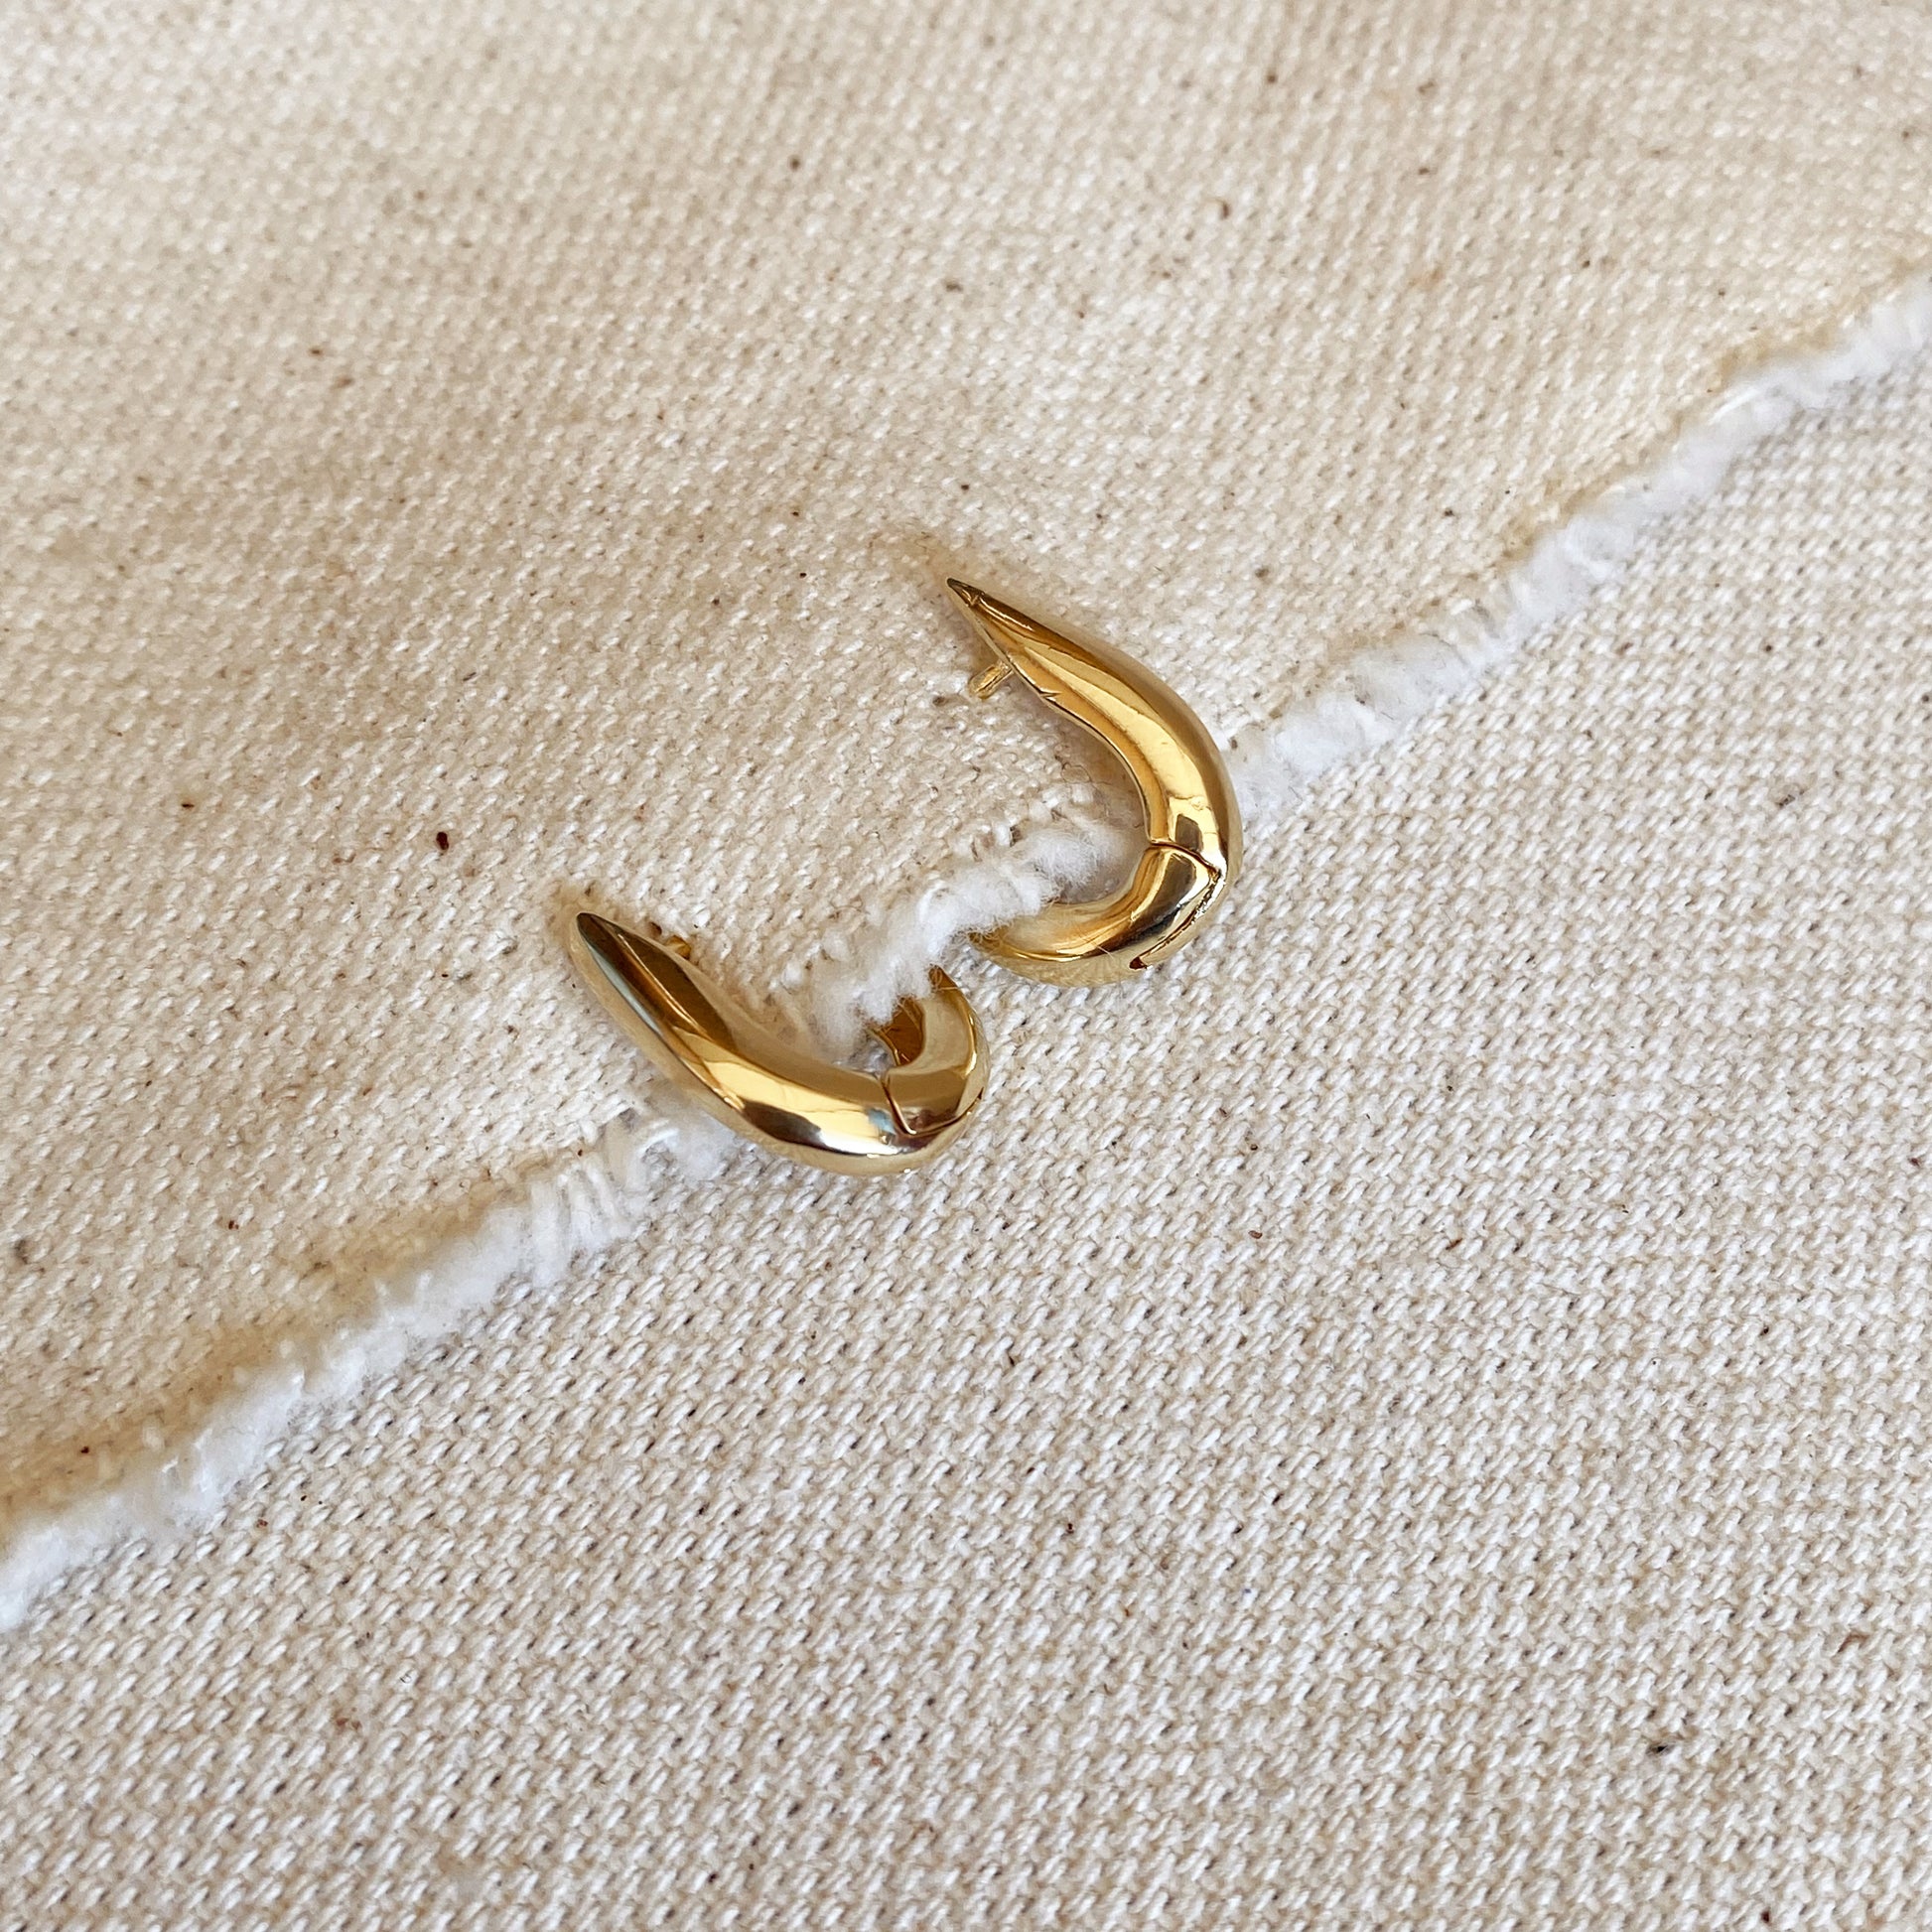 GoldFi 18k Gold Filled U Shaped Hoop Earrings